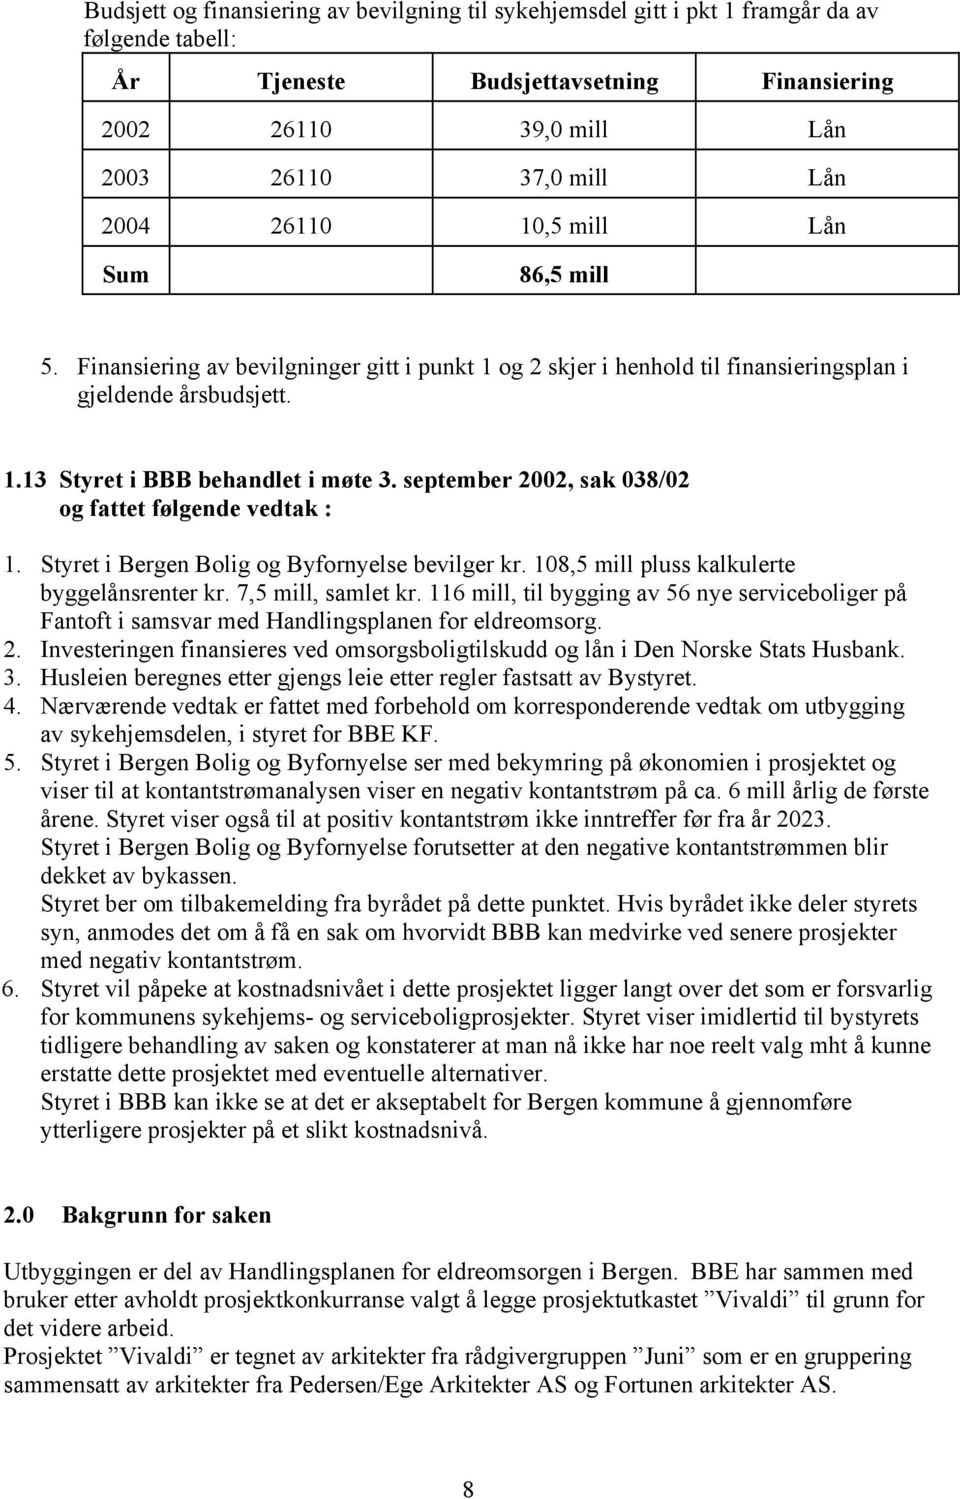 september 2002, sak 038/02 og fattet følgende vedtak : 1. Styret i Bergen Bolig og Byfornyelse bevilger kr. 108,5 mill pluss kalkulerte byggelånsrenter kr. 7,5 mill, samlet kr.